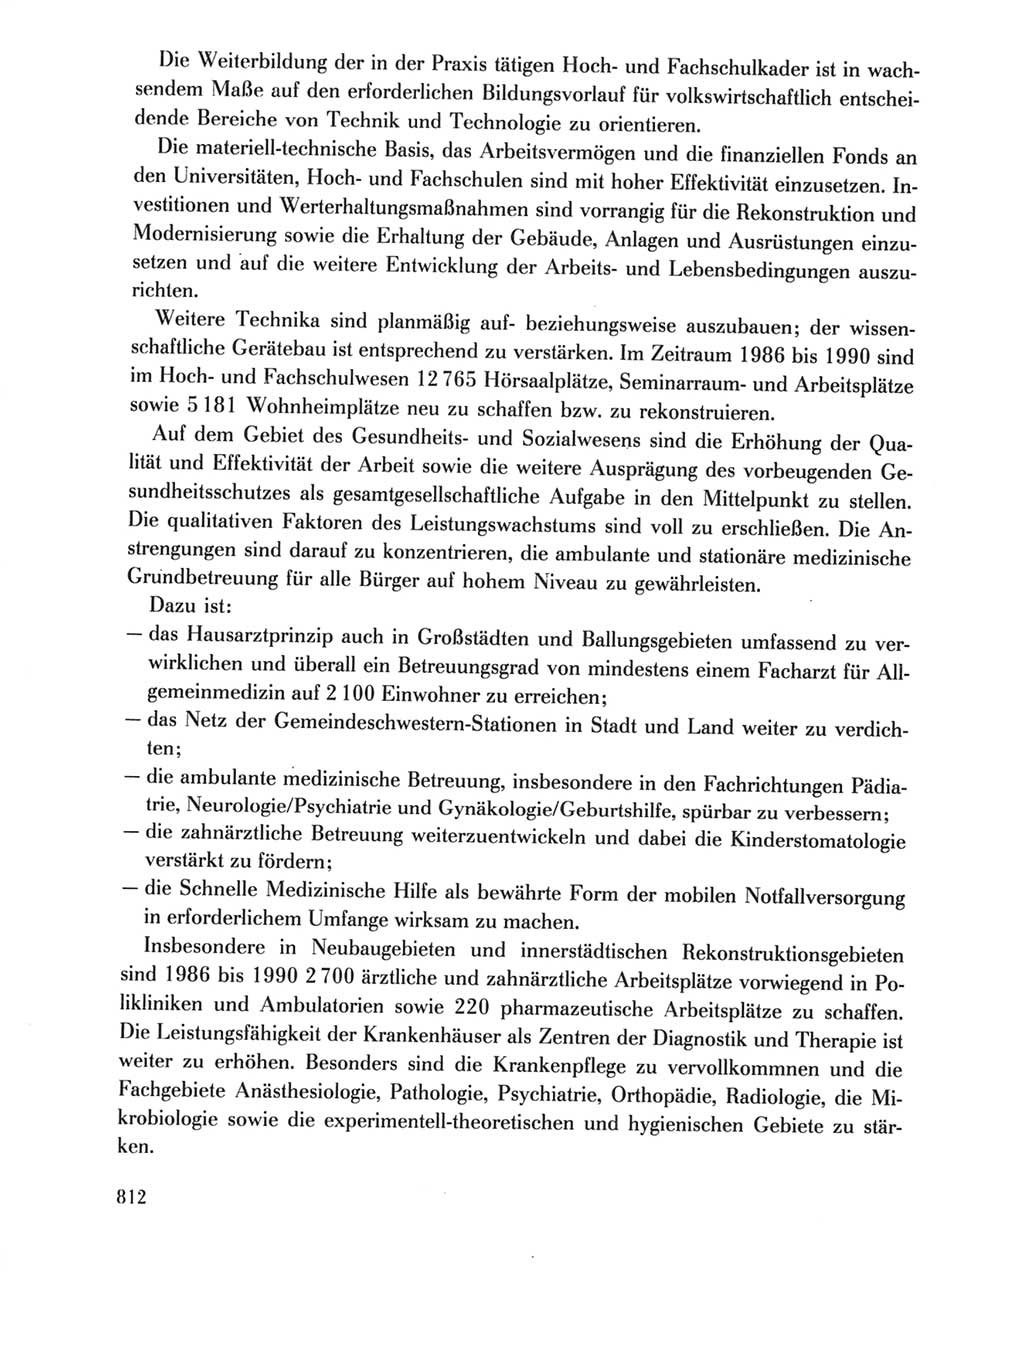 Protokoll der Verhandlungen des Ⅺ. Parteitages der Sozialistischen Einheitspartei Deutschlands (SED) [Deutsche Demokratische Republik (DDR)] 1986, Seite 812